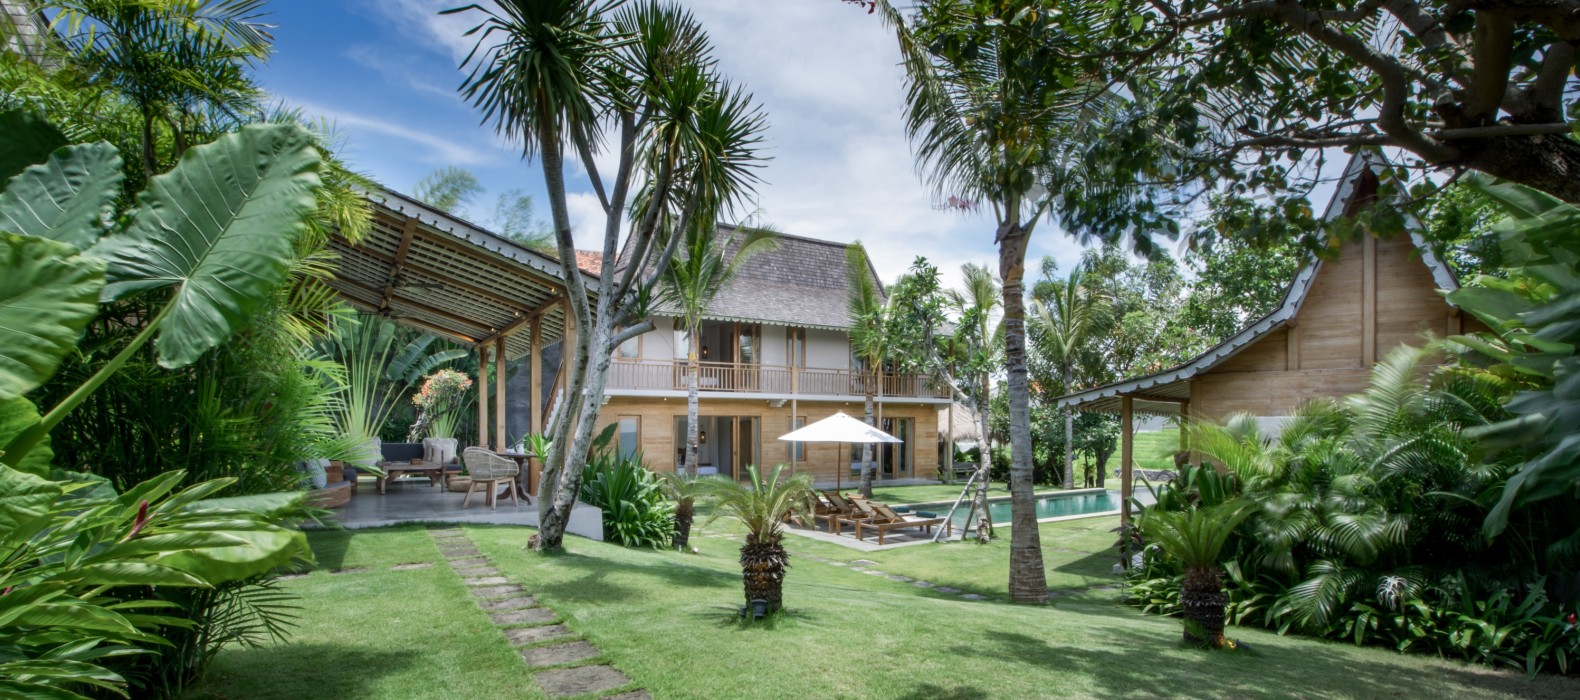 Garden of Villa Alea in Bali